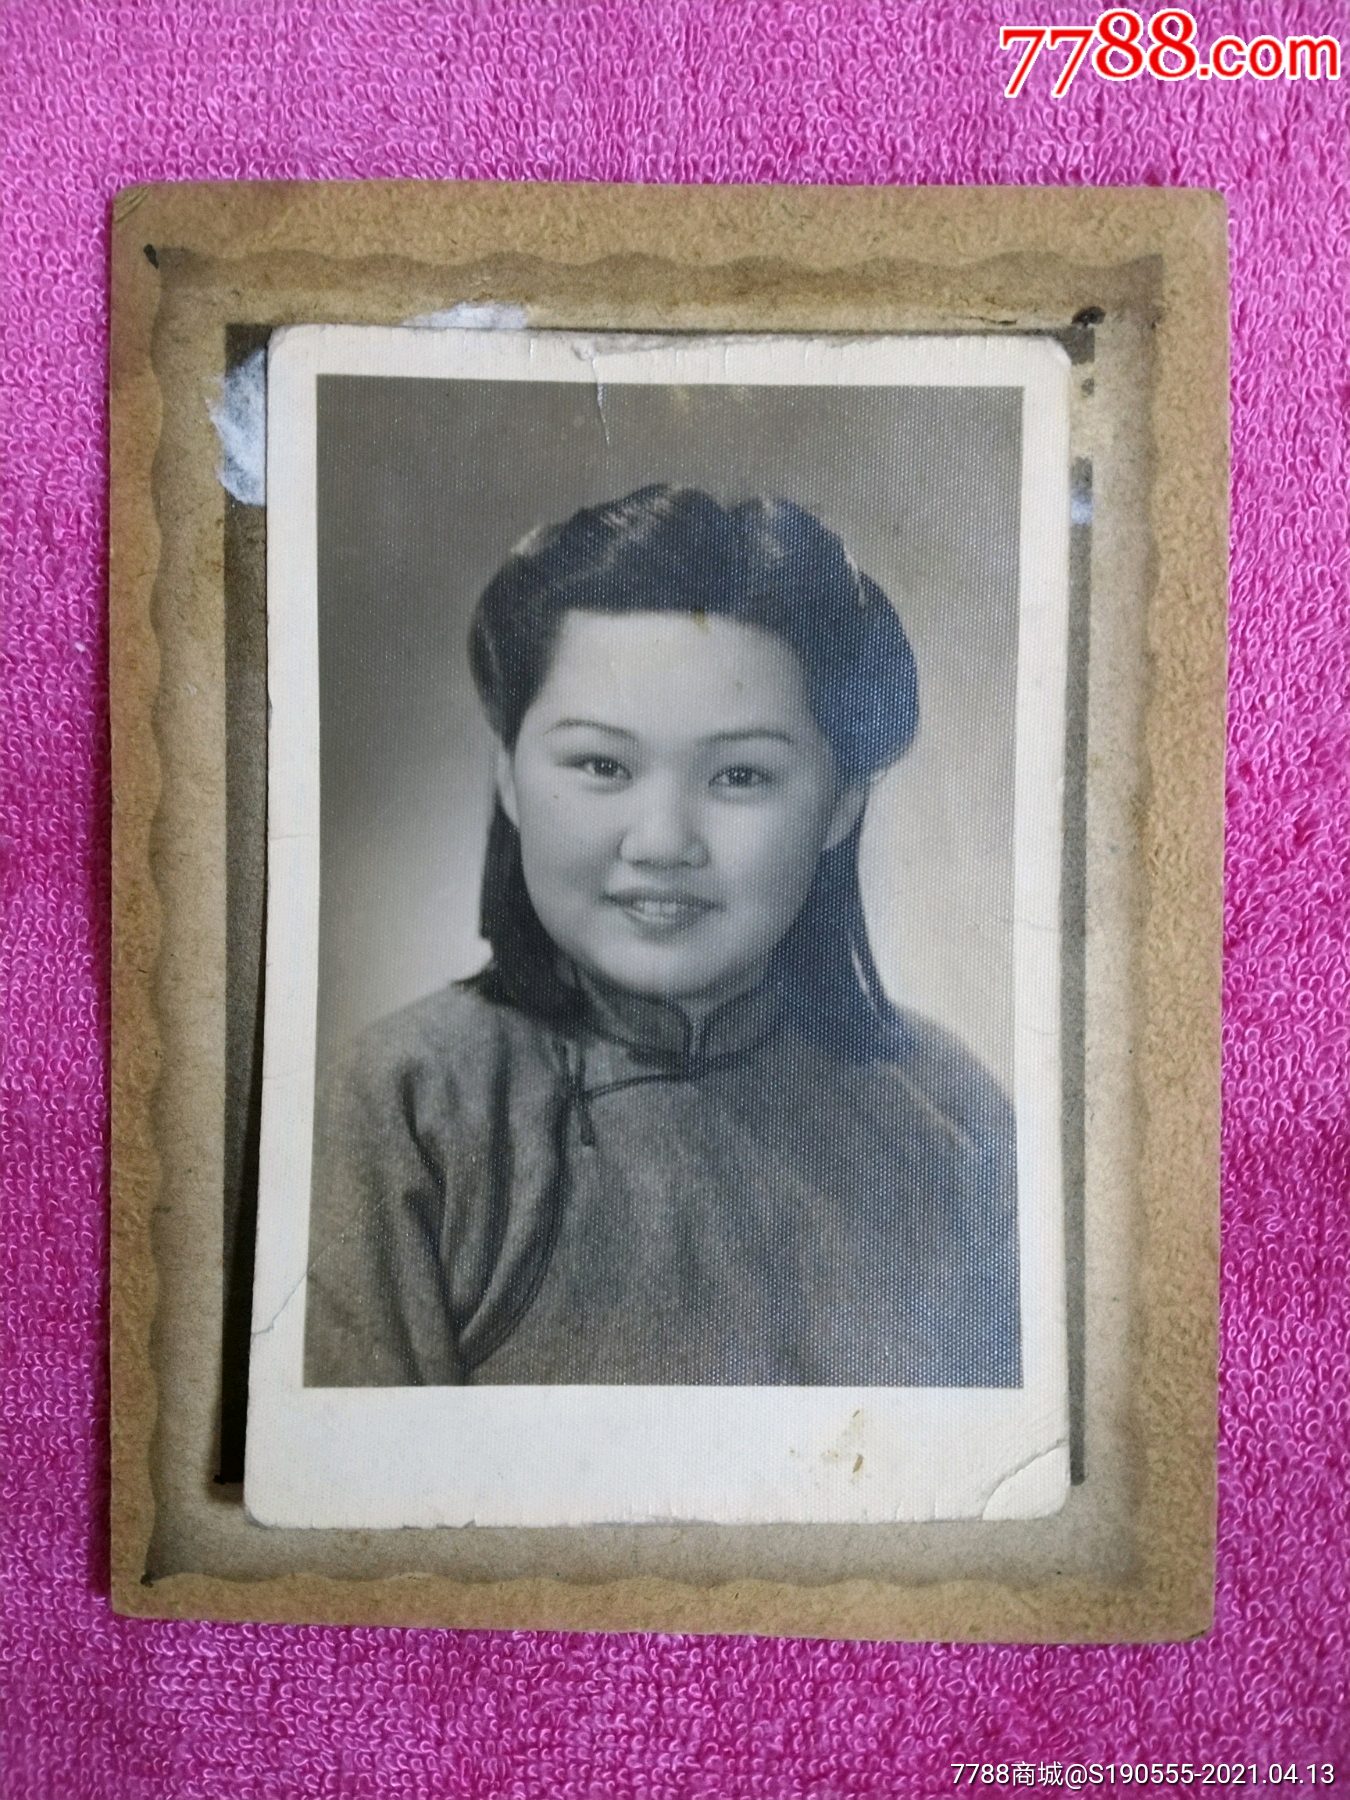 民国时期:穿旗袍的烫发美女学生老照片1枚(照片尺寸10